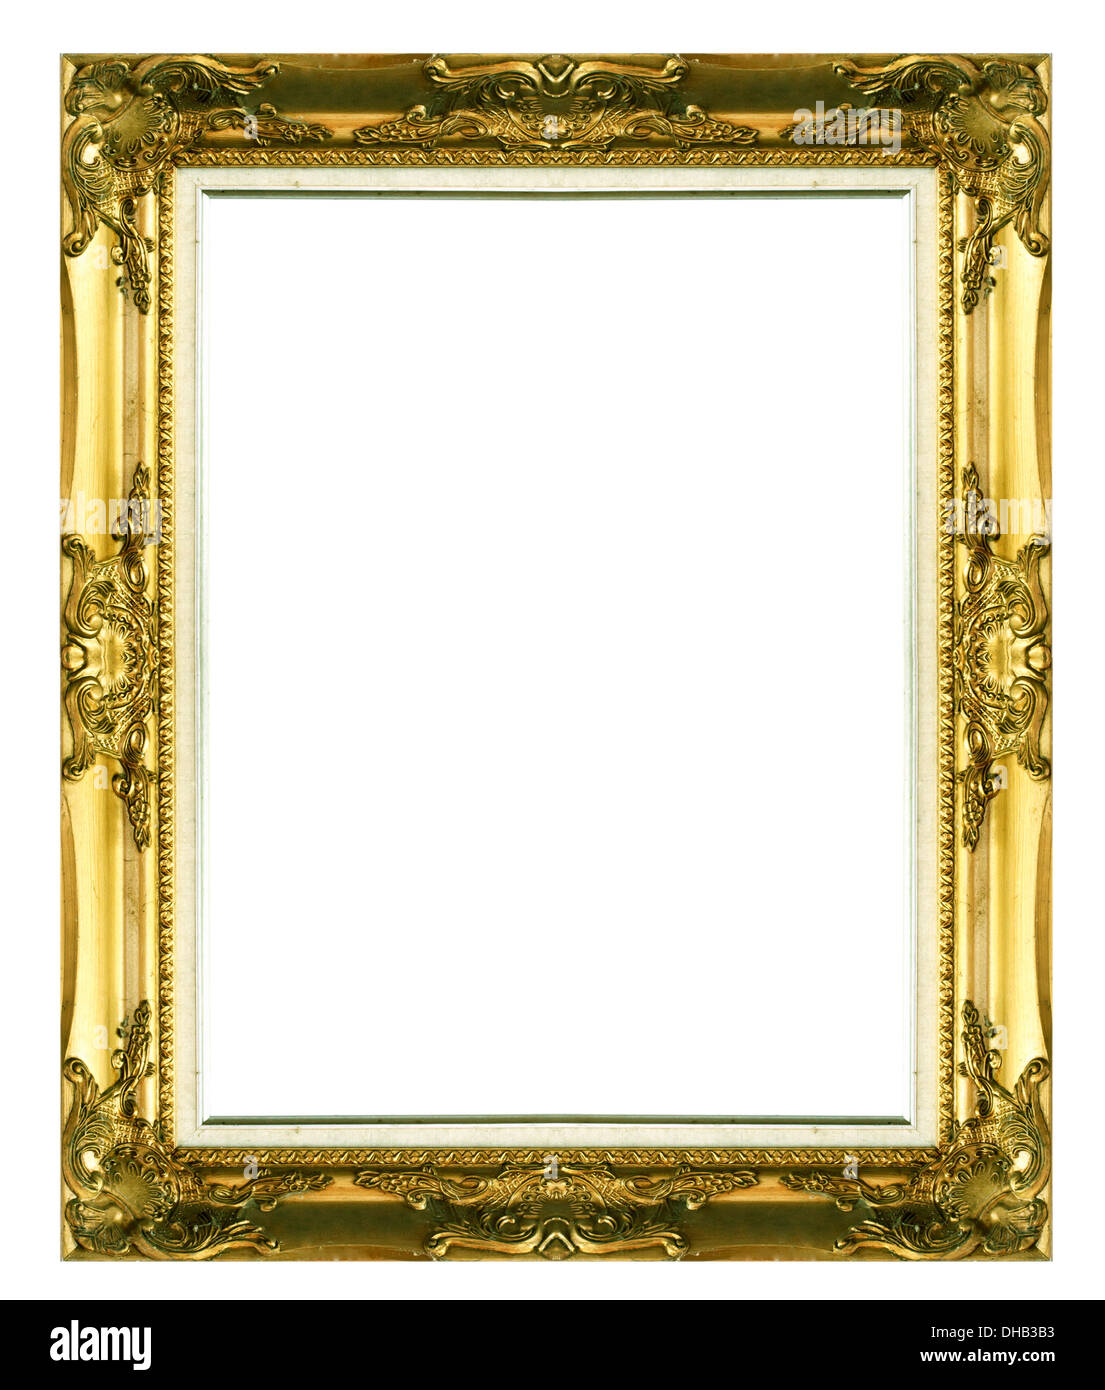 Alt antik gold Bild-Rahmen-Wand, Tapete, dekorative Objekte isoliert weißen  Hintergrund Stockfotografie - Alamy